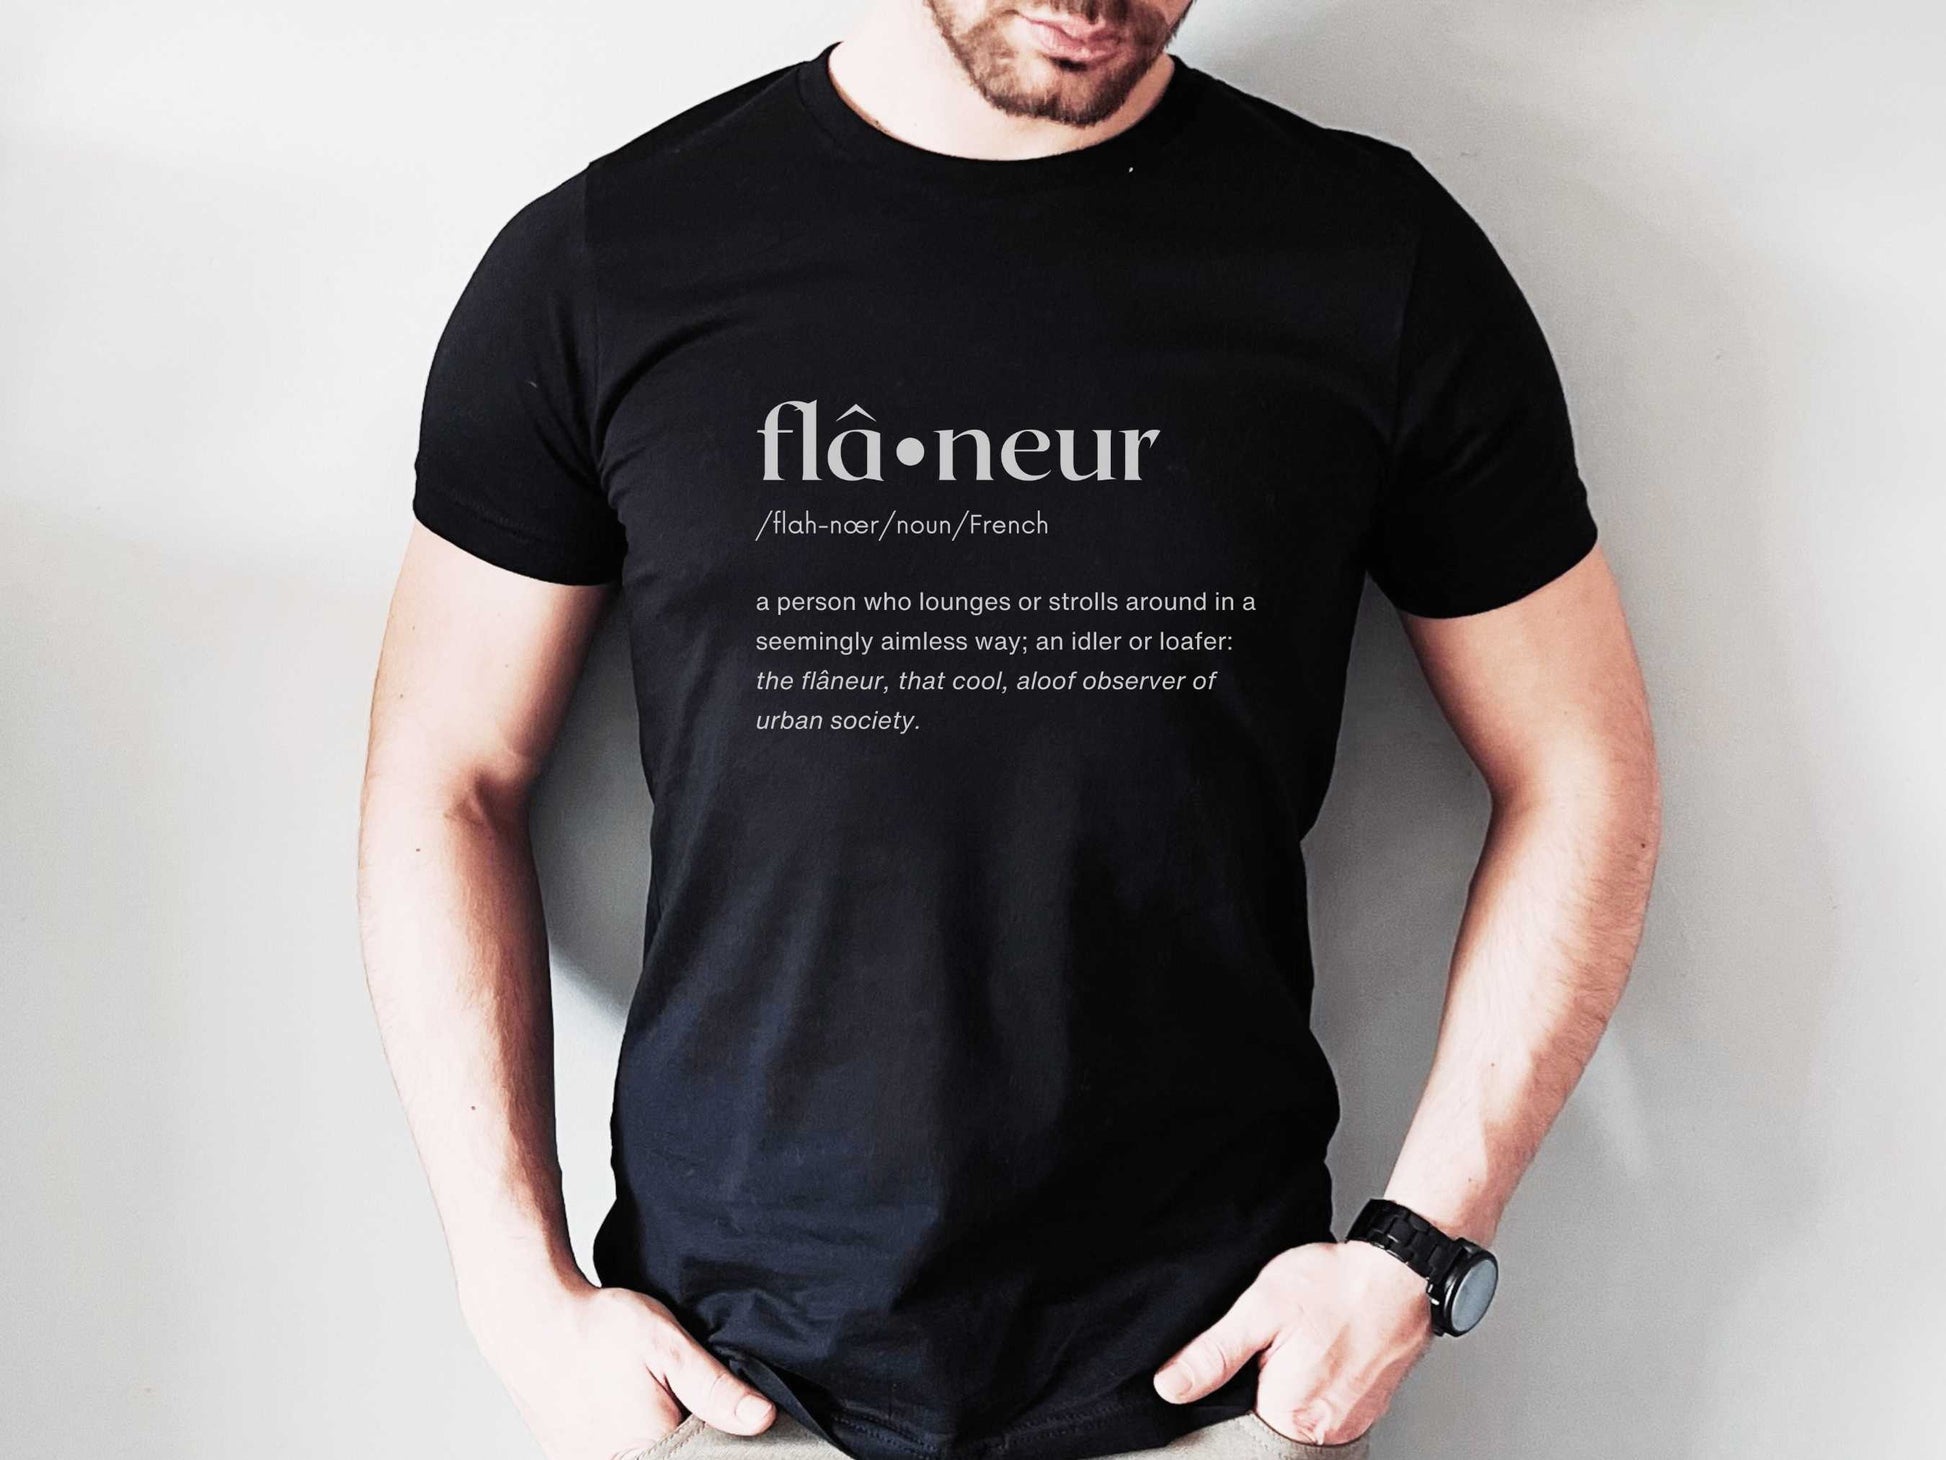 Flâneur "Wanderer" French Word T-Shirt in Black